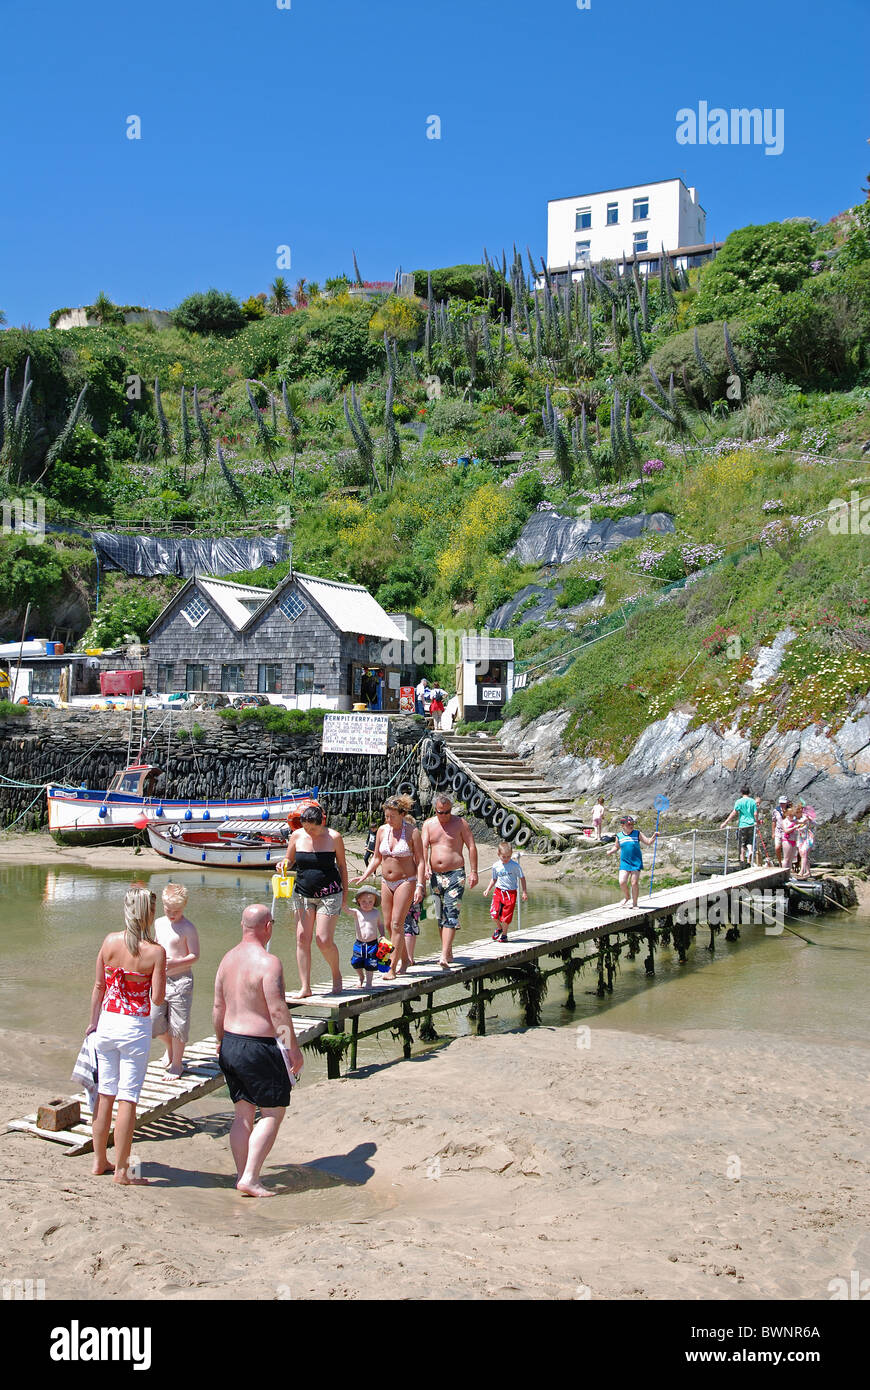 Les vacanciers qui traversent la peu de pont de bois sur la rivière à gannel plage de Crantock près de Newquay, à Cornwall, uk Banque D'Images